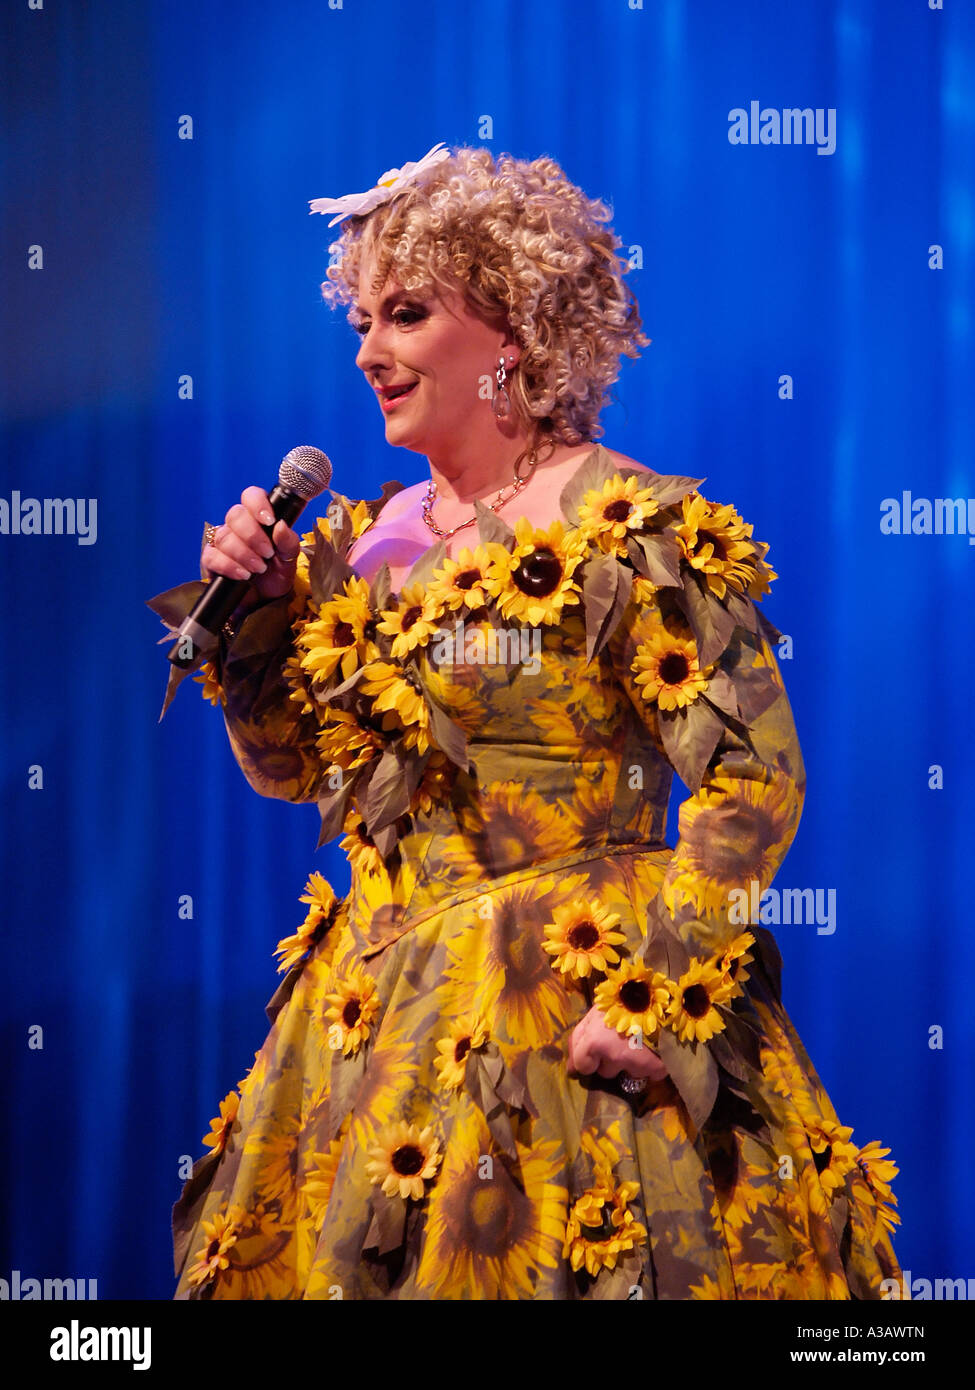 Diva cantante ejecutante holandesa Karin Bloemen en vivo en el escenario vistiendo una de sus marcas vestidos de flores de Aalsmeer Países Bajos Foto de stock